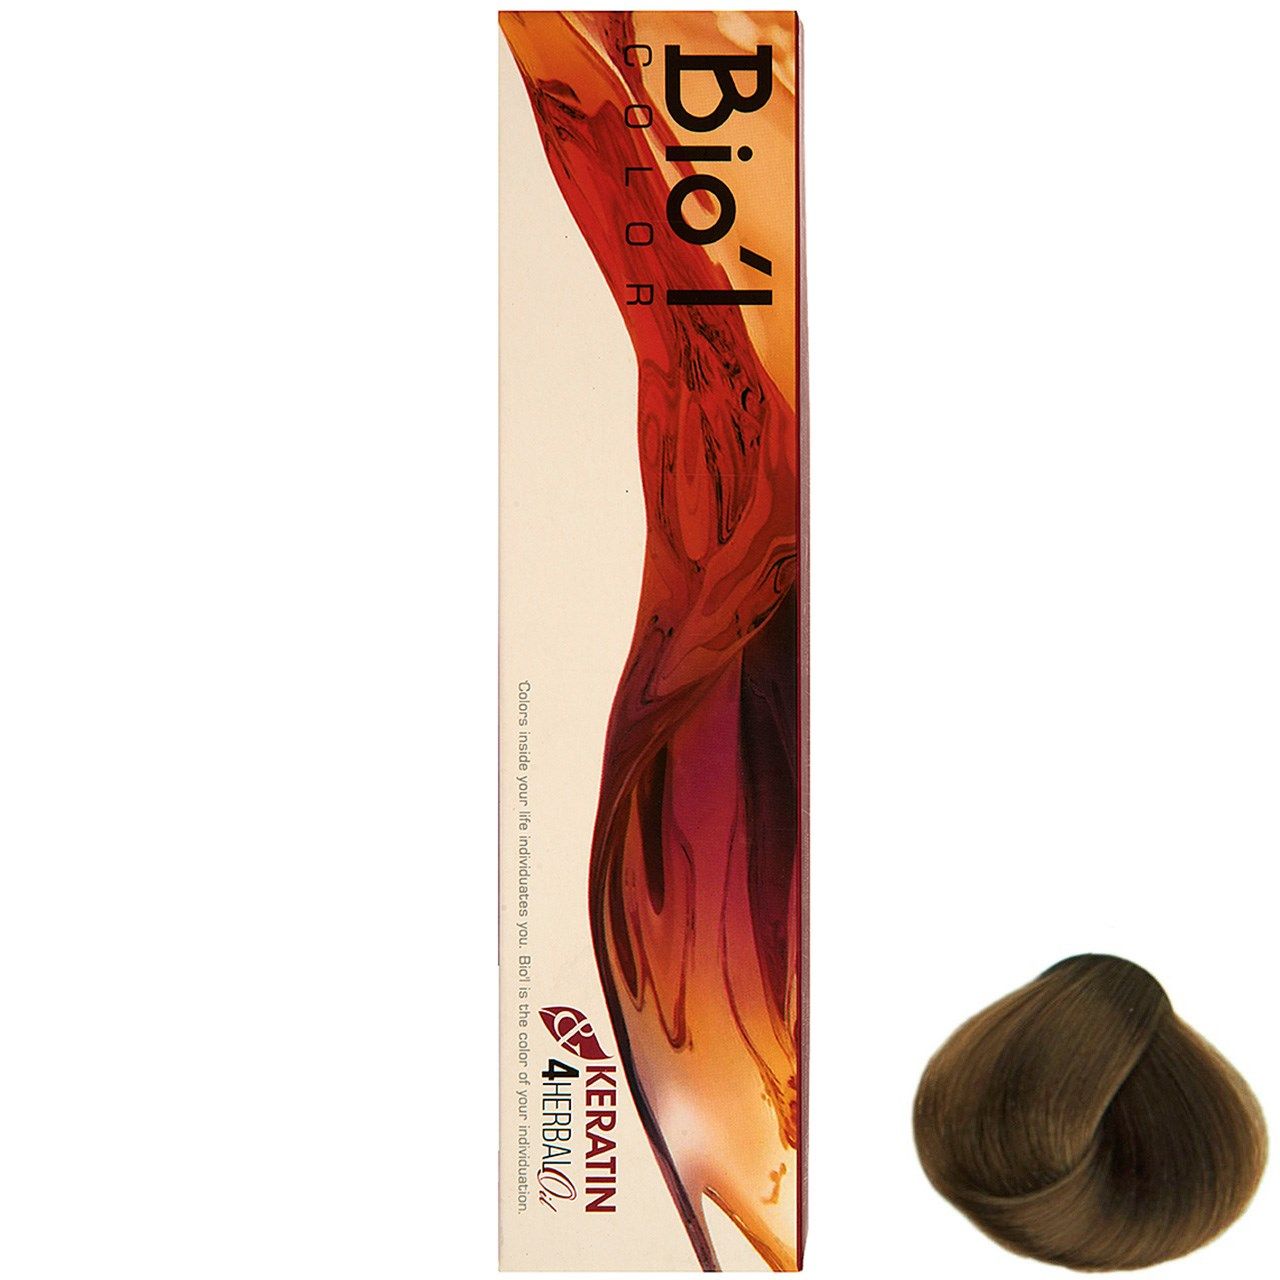 رنگ موی بیول سری Nescafe مدل بلوند نسکافه تیره شماره 6.18